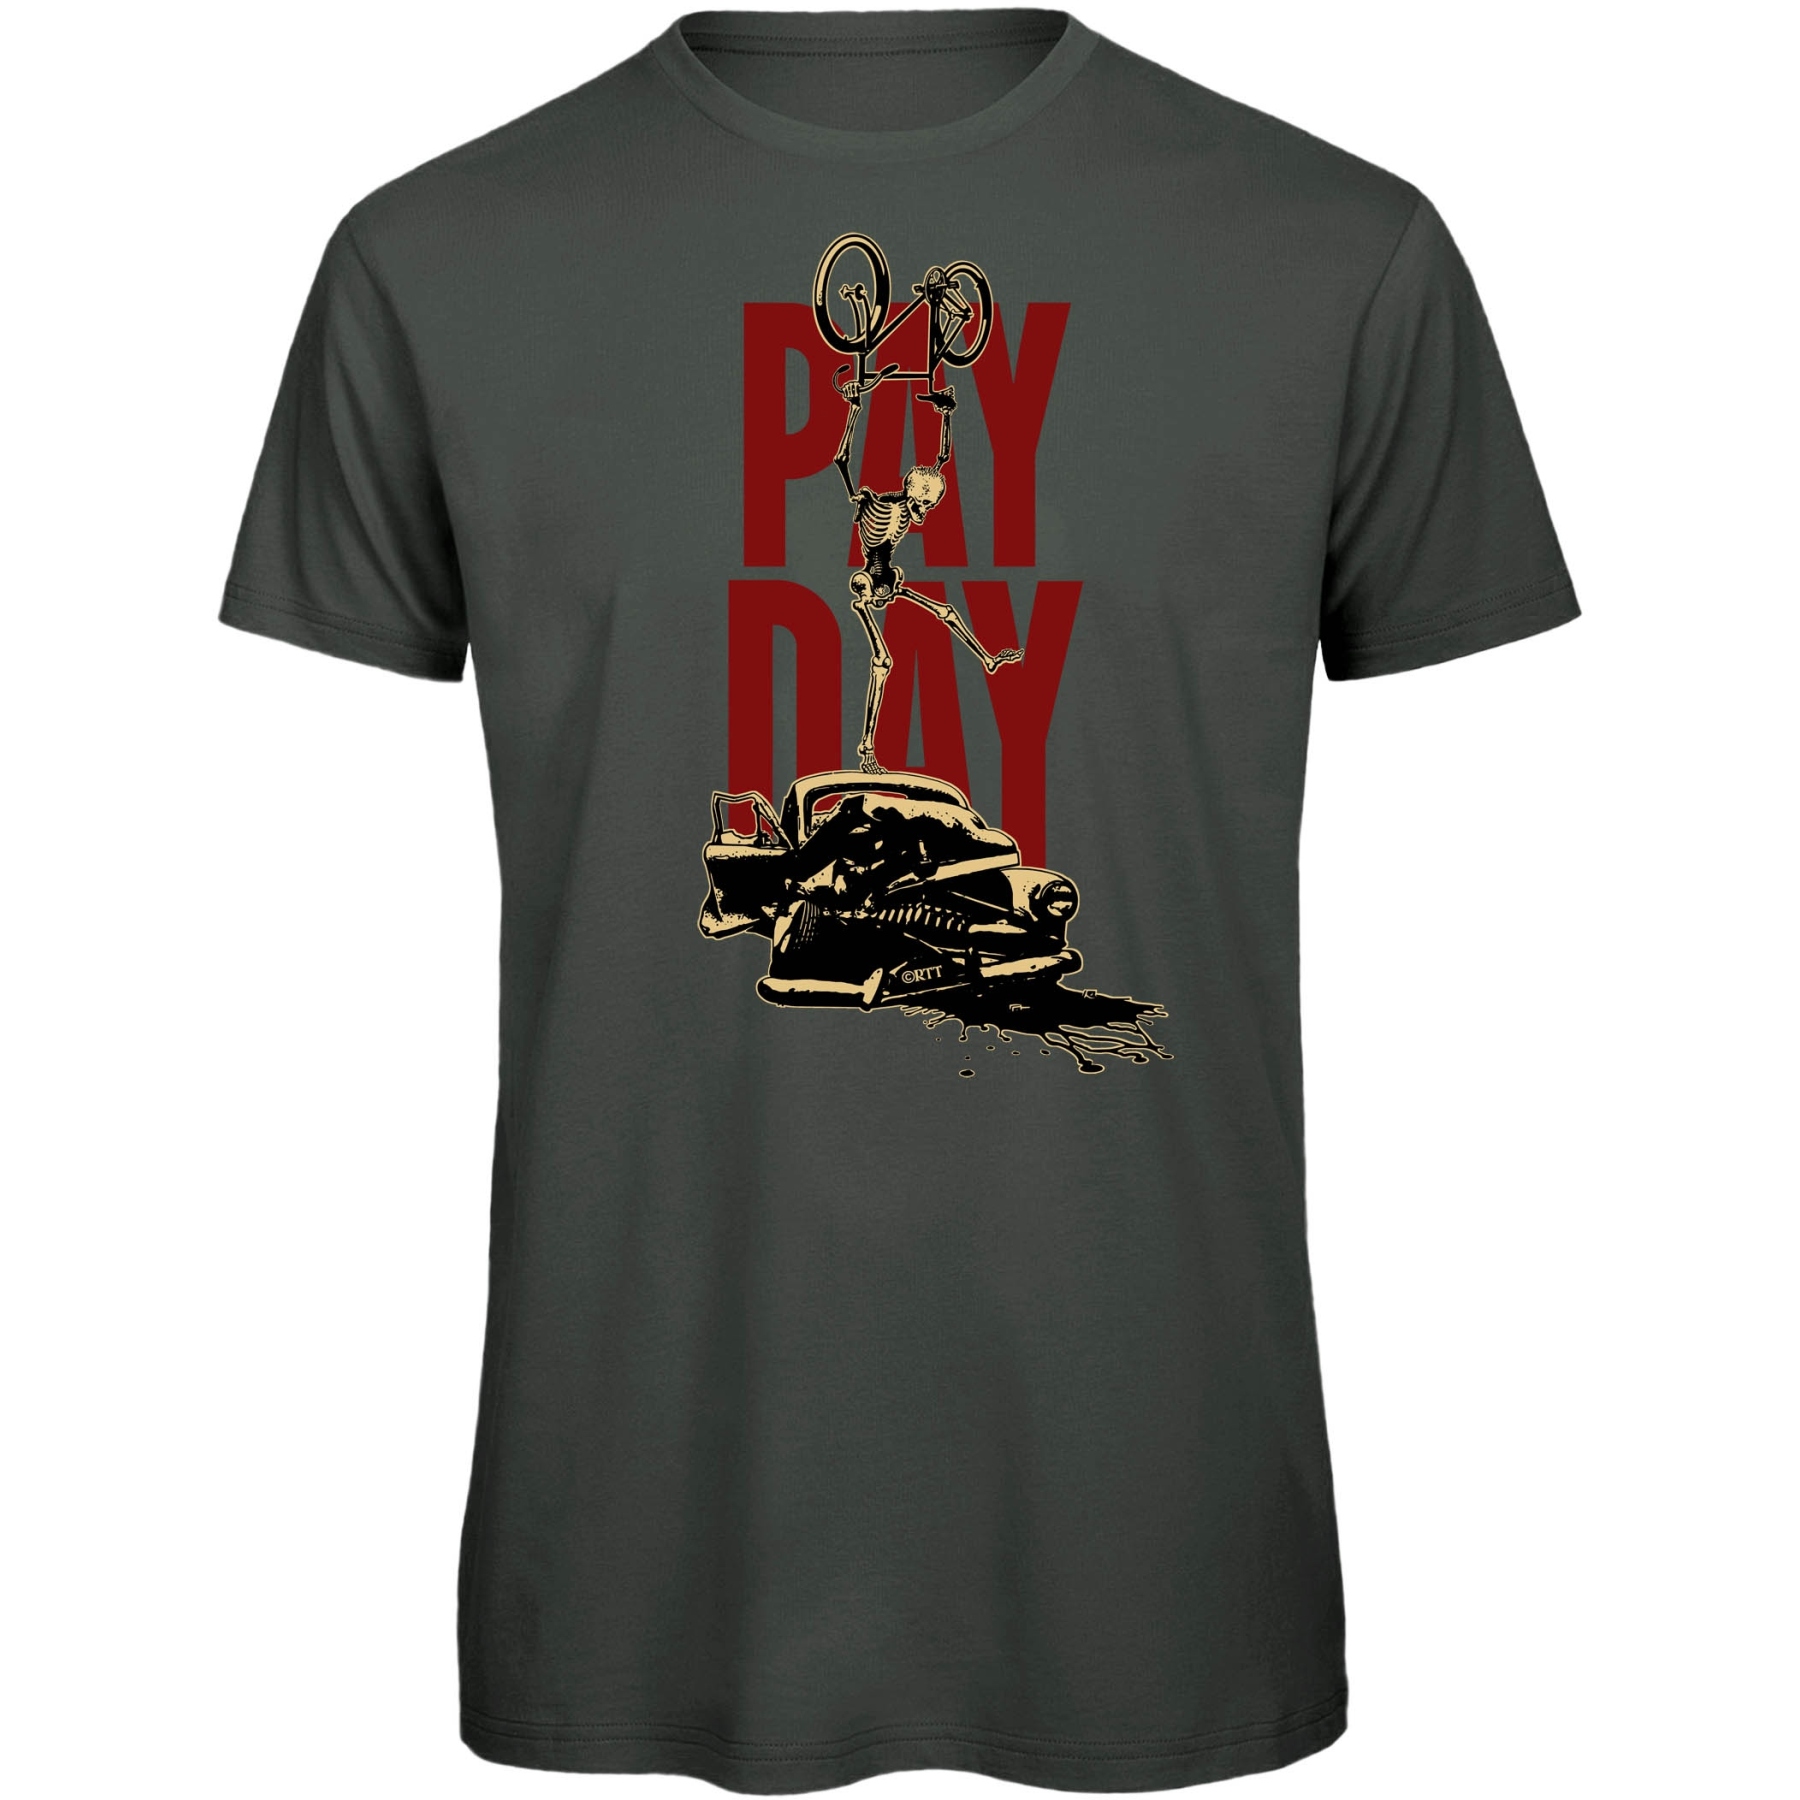 Foto de RTTshirts Camiseta Bicicleta - PayDay - gris oscuro